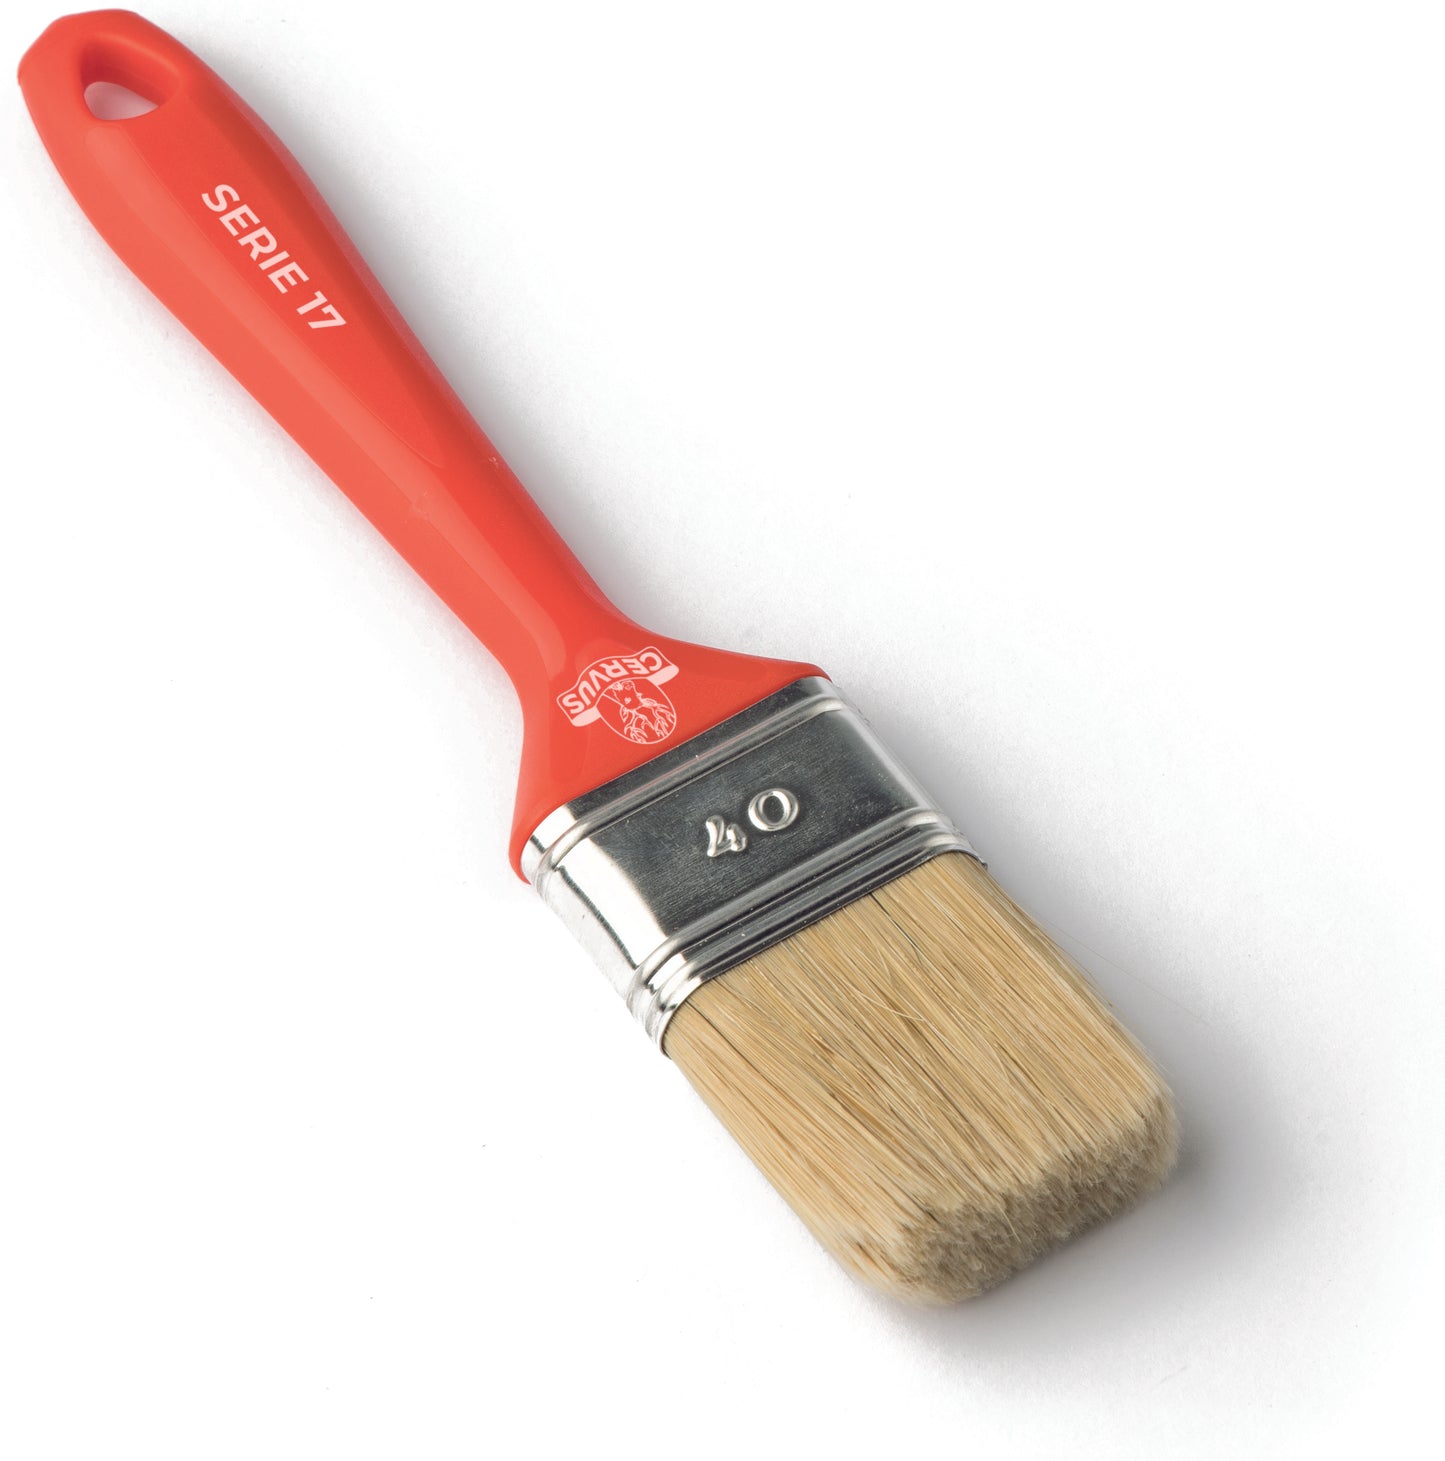 S17 Series - Decoupage/Glue/Paint Brush - Disposable - Plastic Handle